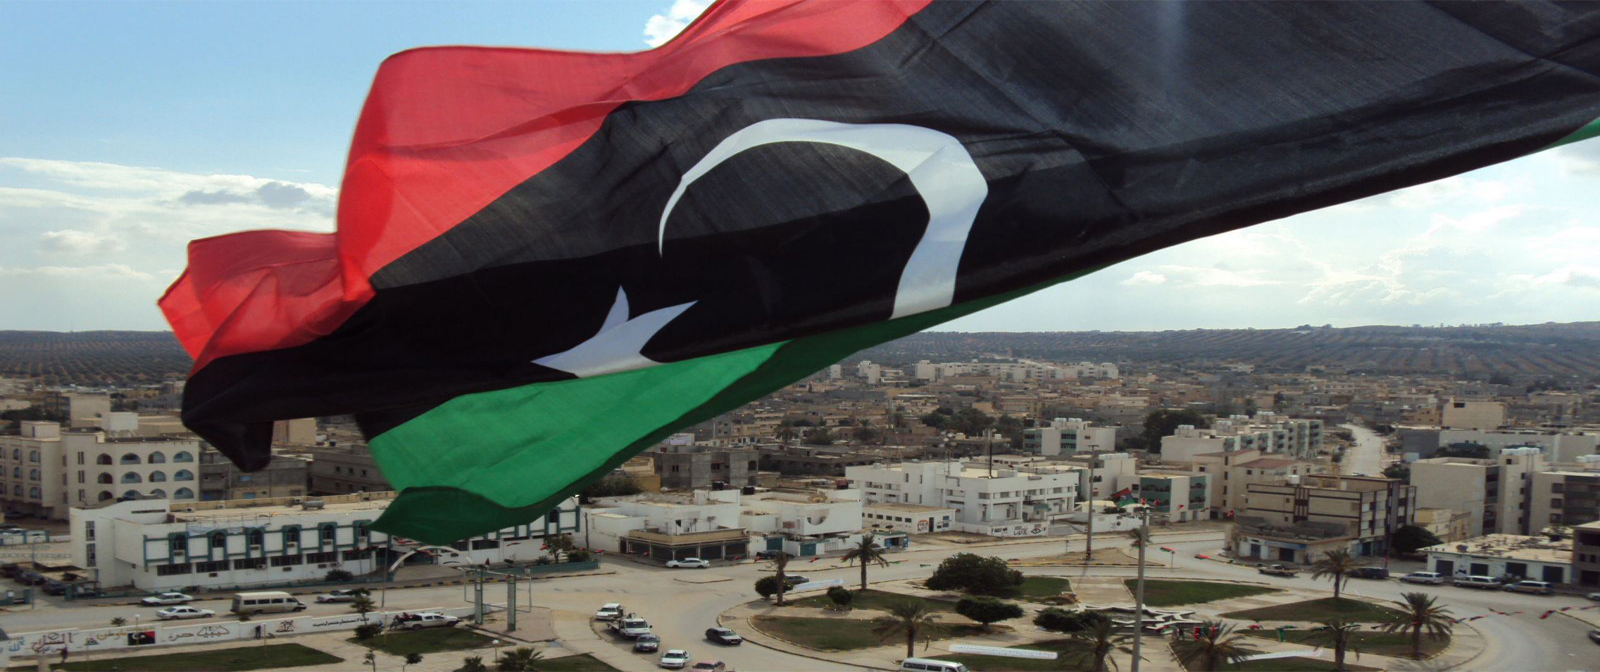 البعثة الأممية في ليبيا تتسلم التقرير الخاص بمشاورات الملتقى الوطني الليبي